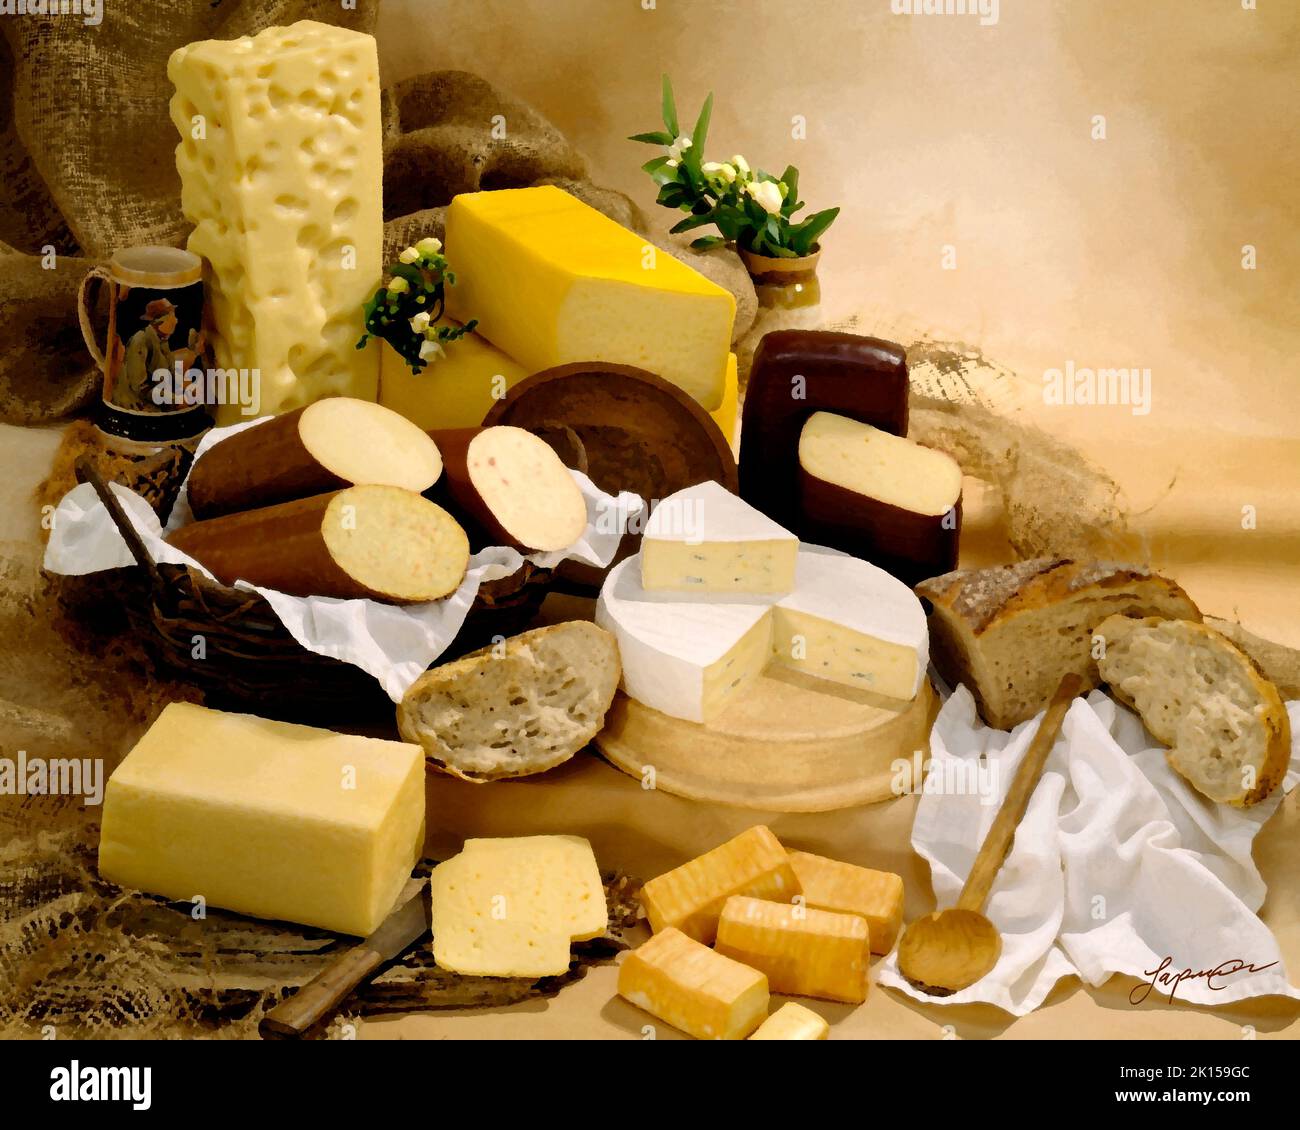 Deutscher Käse in Gruppenfoto, malerischer Filter angewendet. Braun getönter melierter Hintergrund. Studio-Tischplatte, klassisches Bild Stockfoto